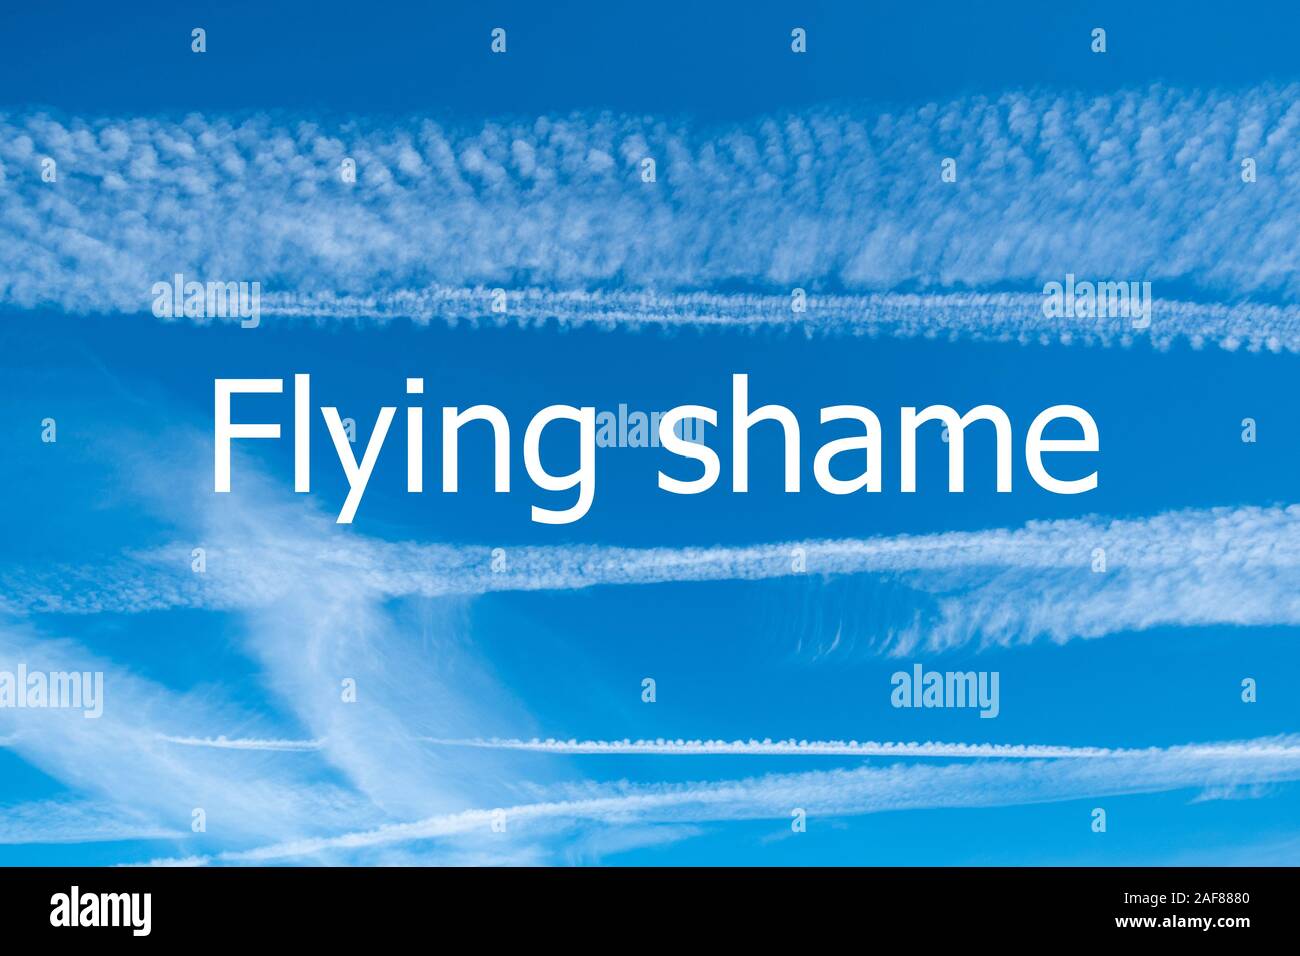 Notion de changement climatique image avec ciel bleu et des traînées de vapeur à partir d'aéronefs avec les mots battant la honte Banque D'Images